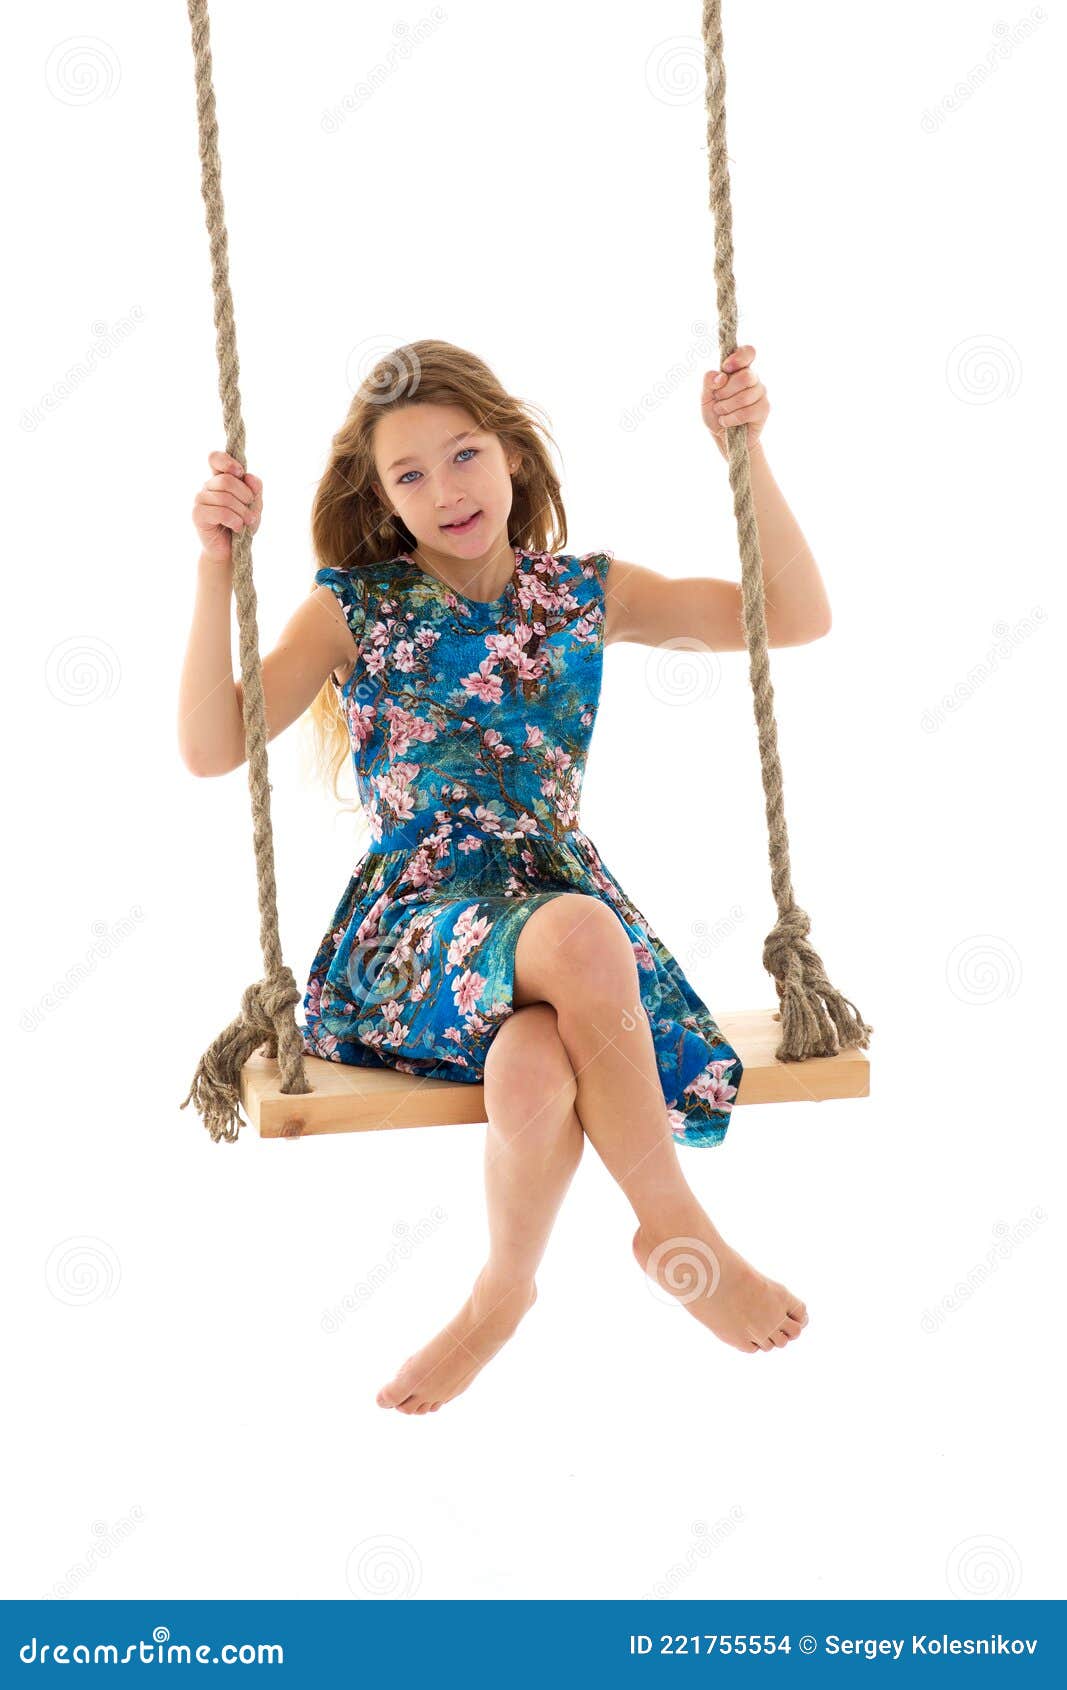 Blonde Girl Swinging on Rope Swing Stock Photo - Image of joyful ...